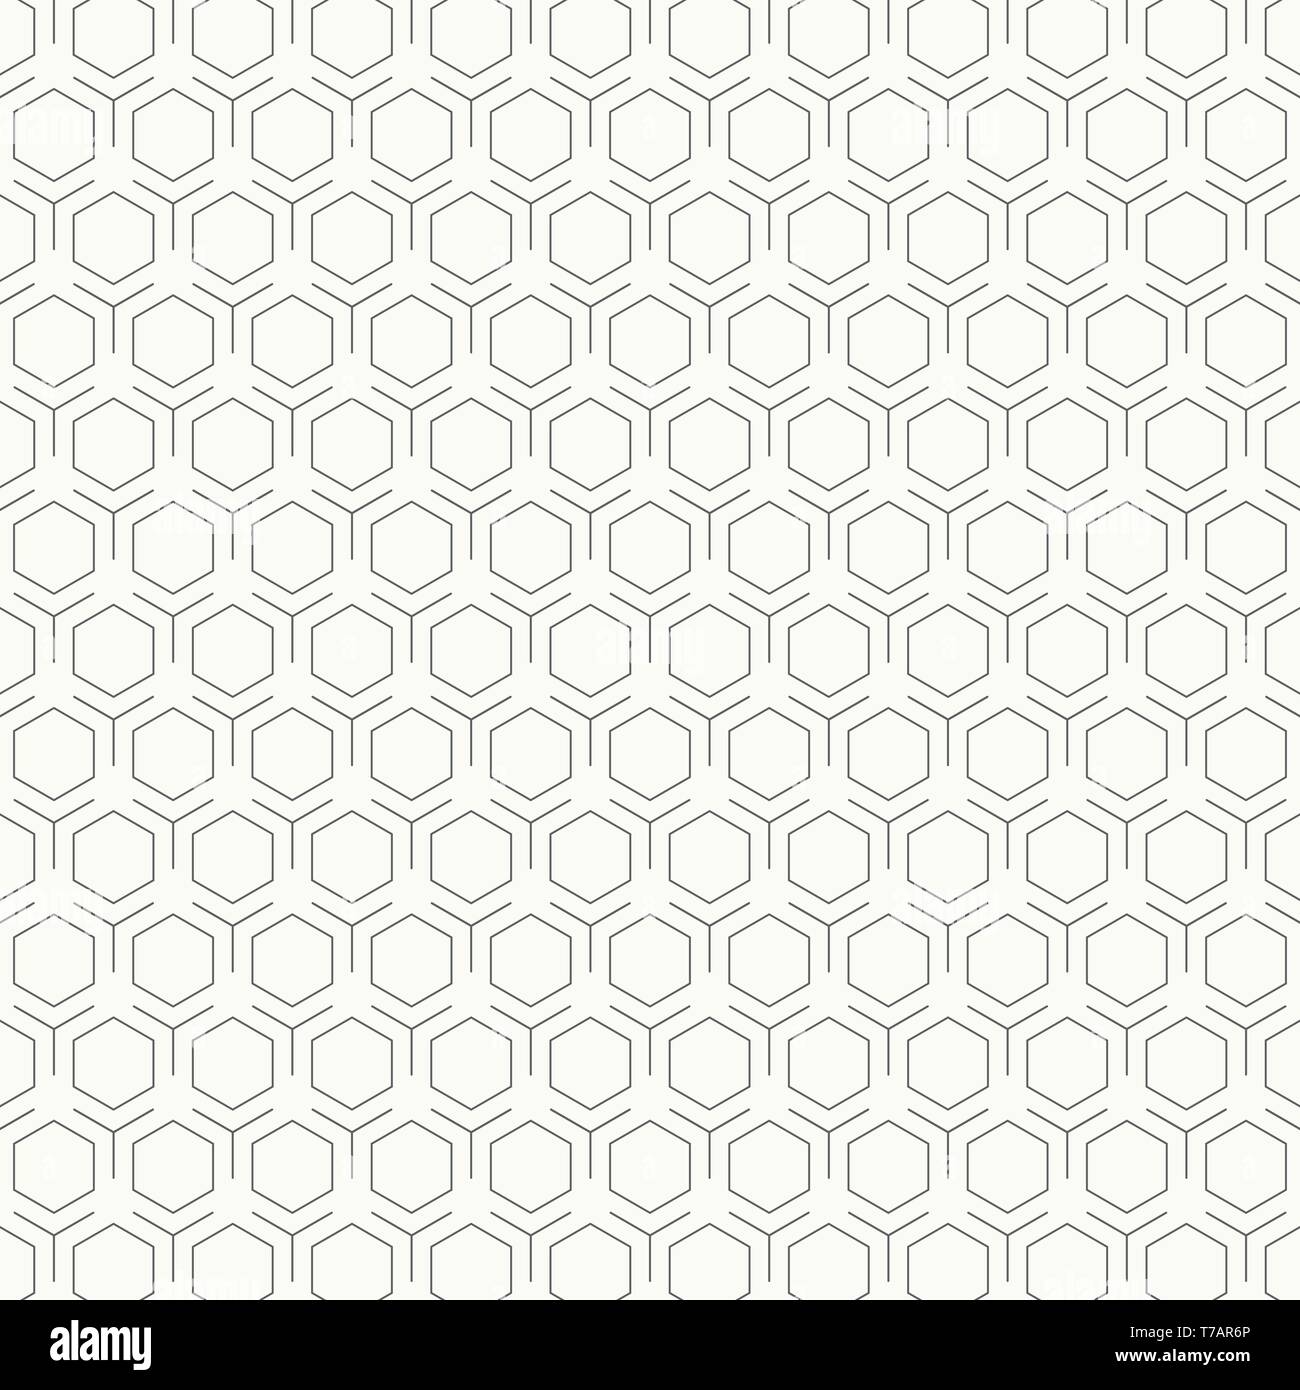 Abstrakte vintage Schwarz und Weiß hexagon Muster Design Hintergrund. Sie Muster, Entwurf, Design, ad, Poster verwenden können. Abbildung: Vector EPS 10. Stock Vektor